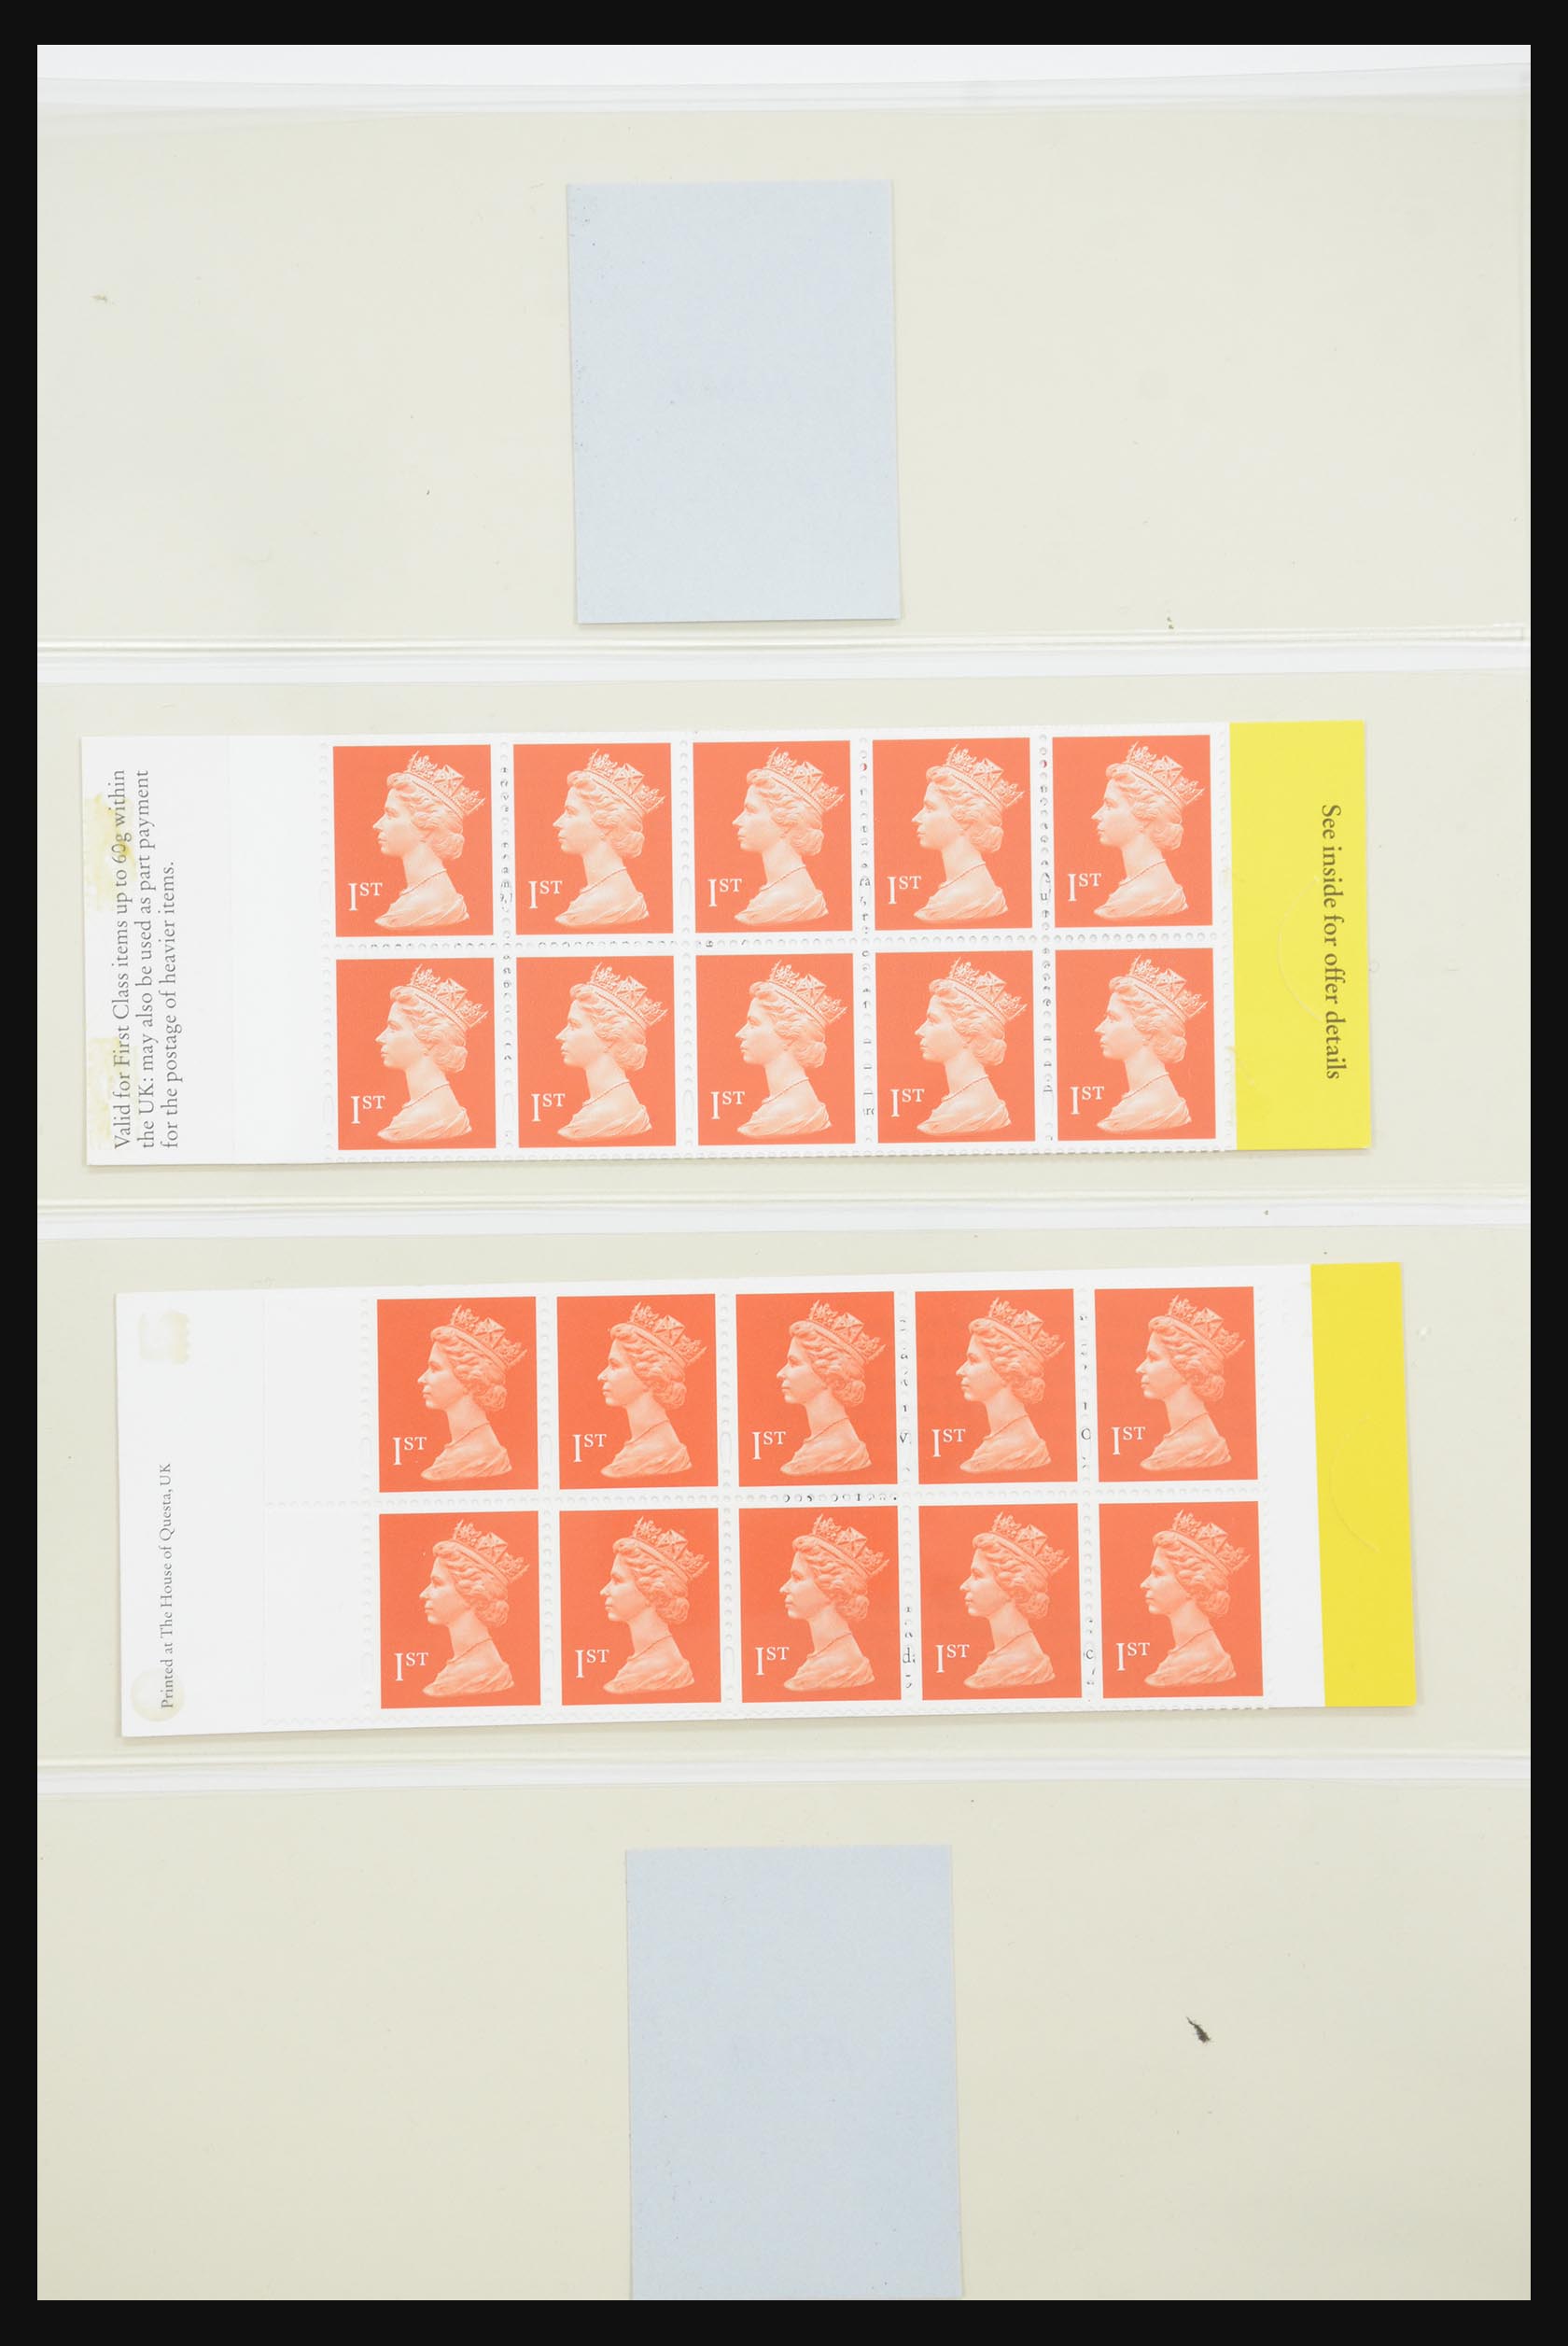 31960 172 - 31960 Engeland postzegelboekjes 1989-2000.